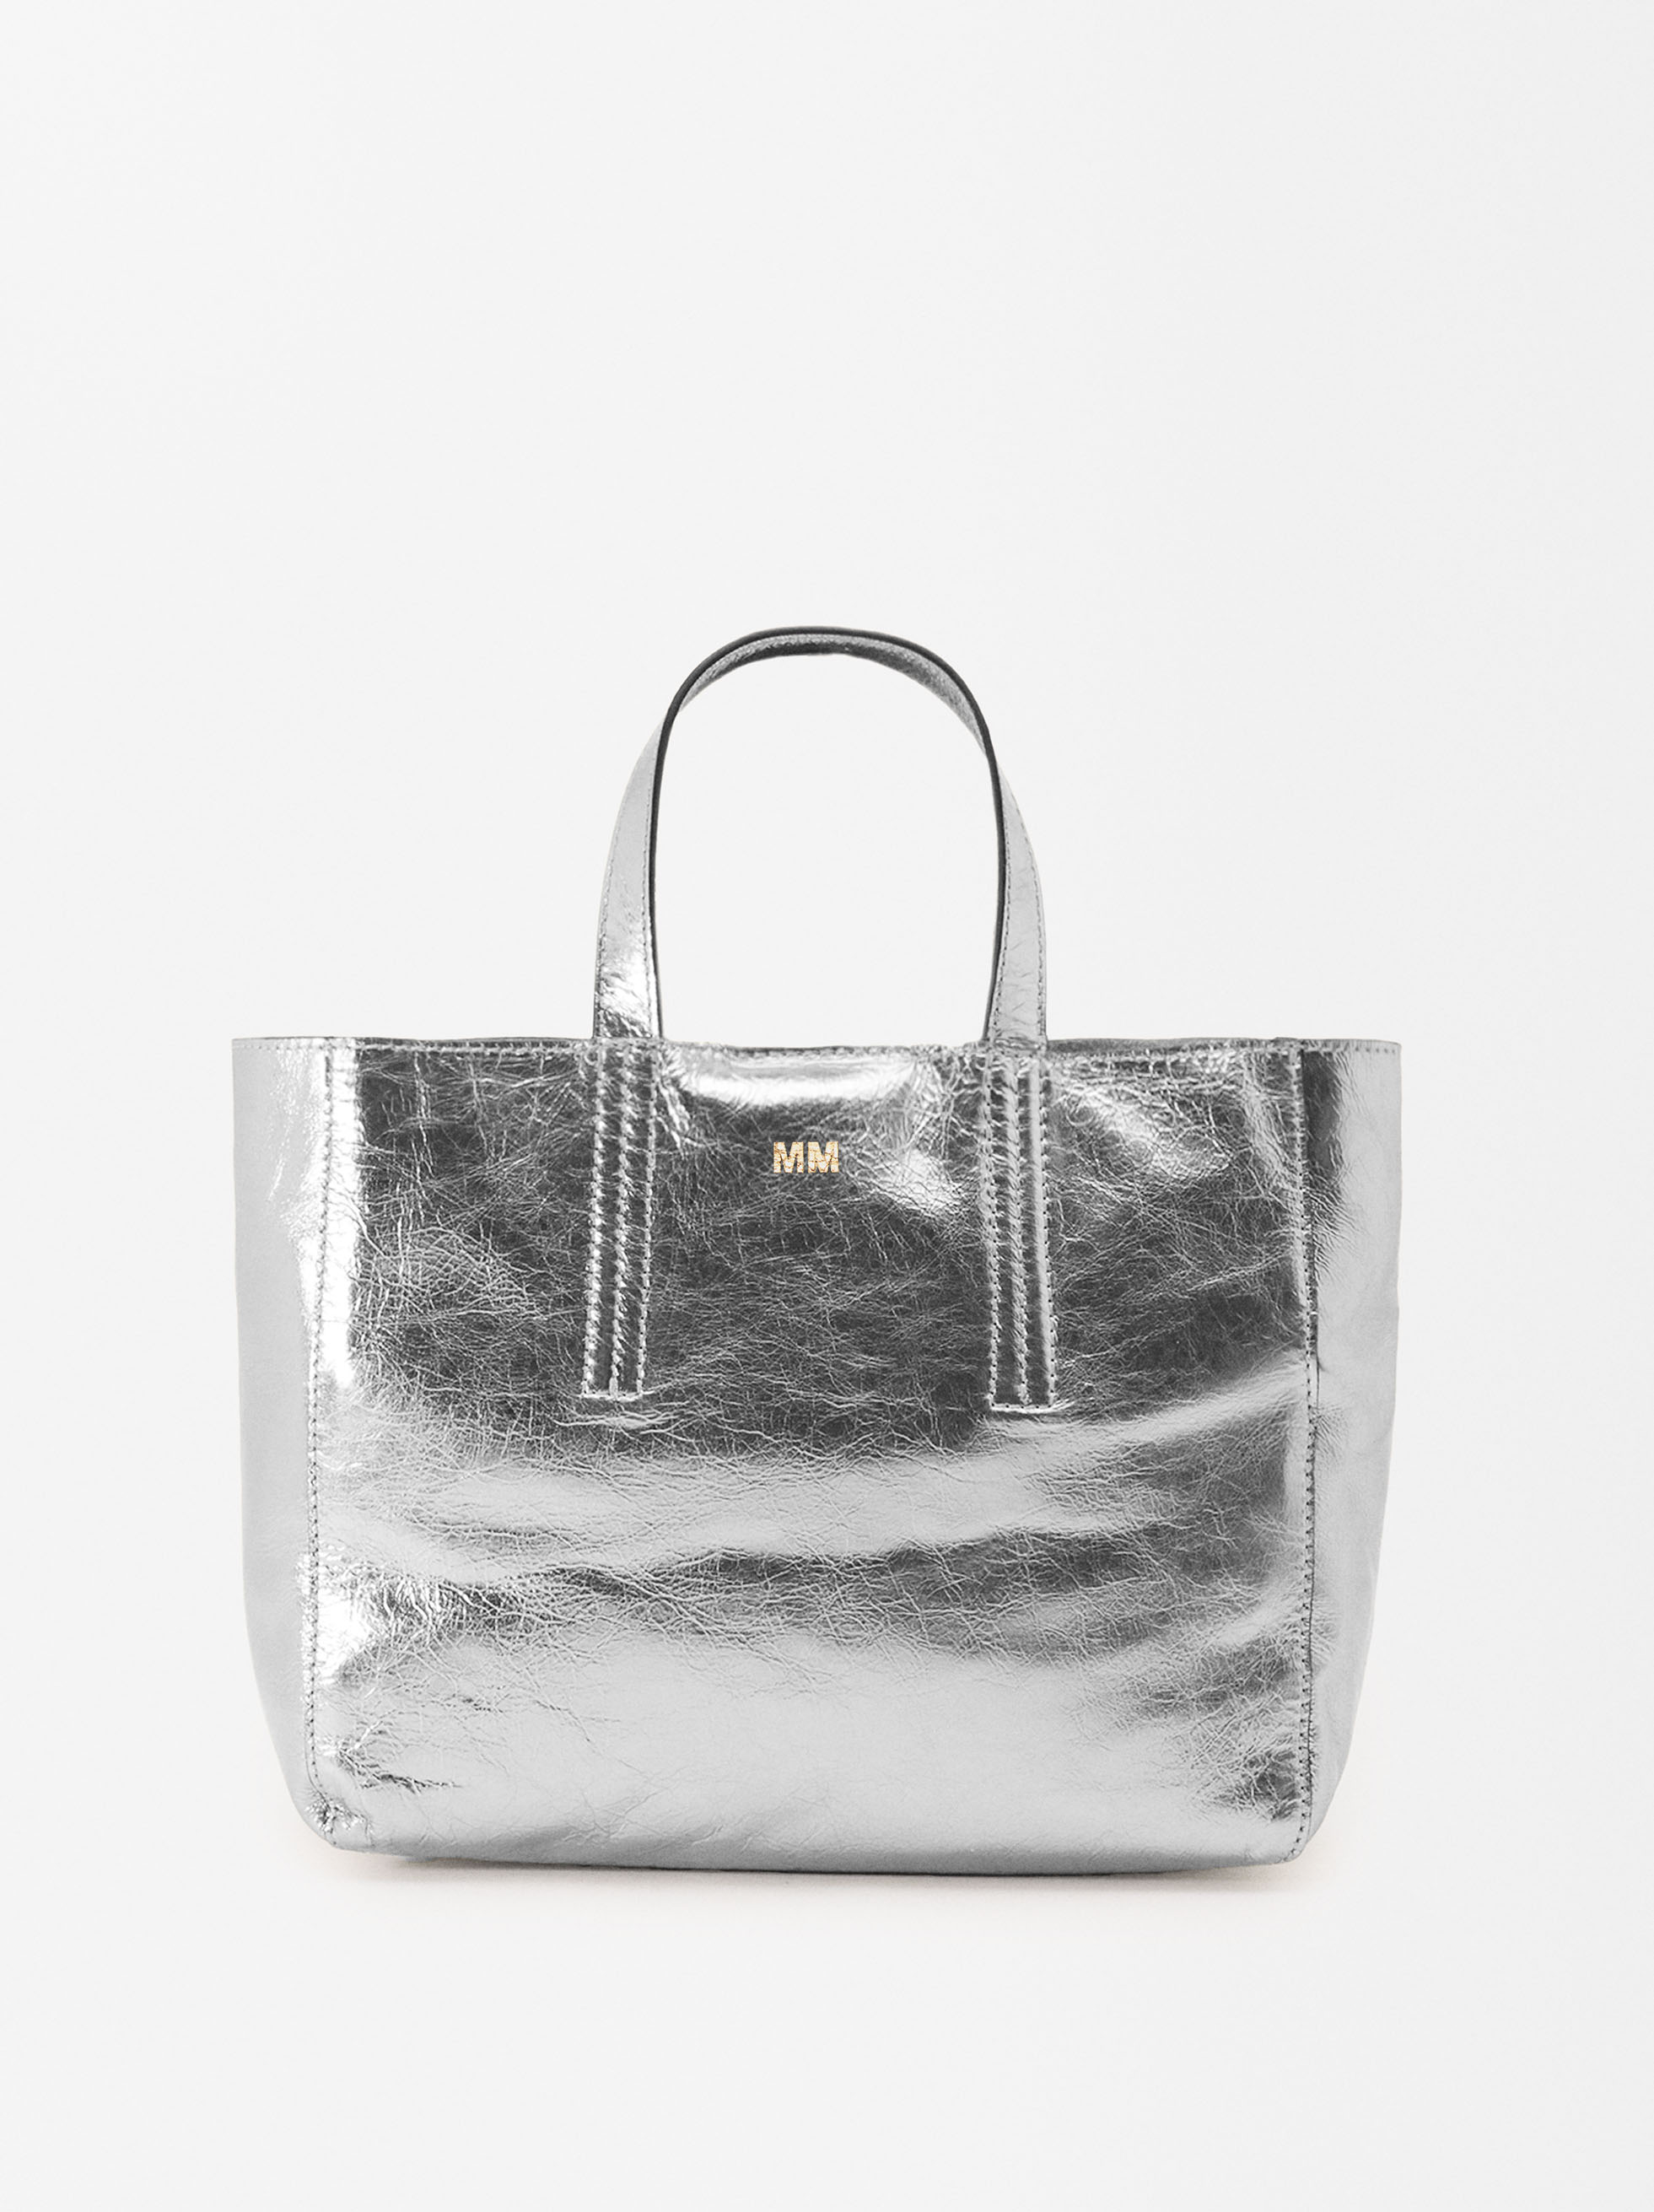 Metallic Silver Mini Bag | Silver Mini Tote Bags Online | LOQI - LOQI LLC